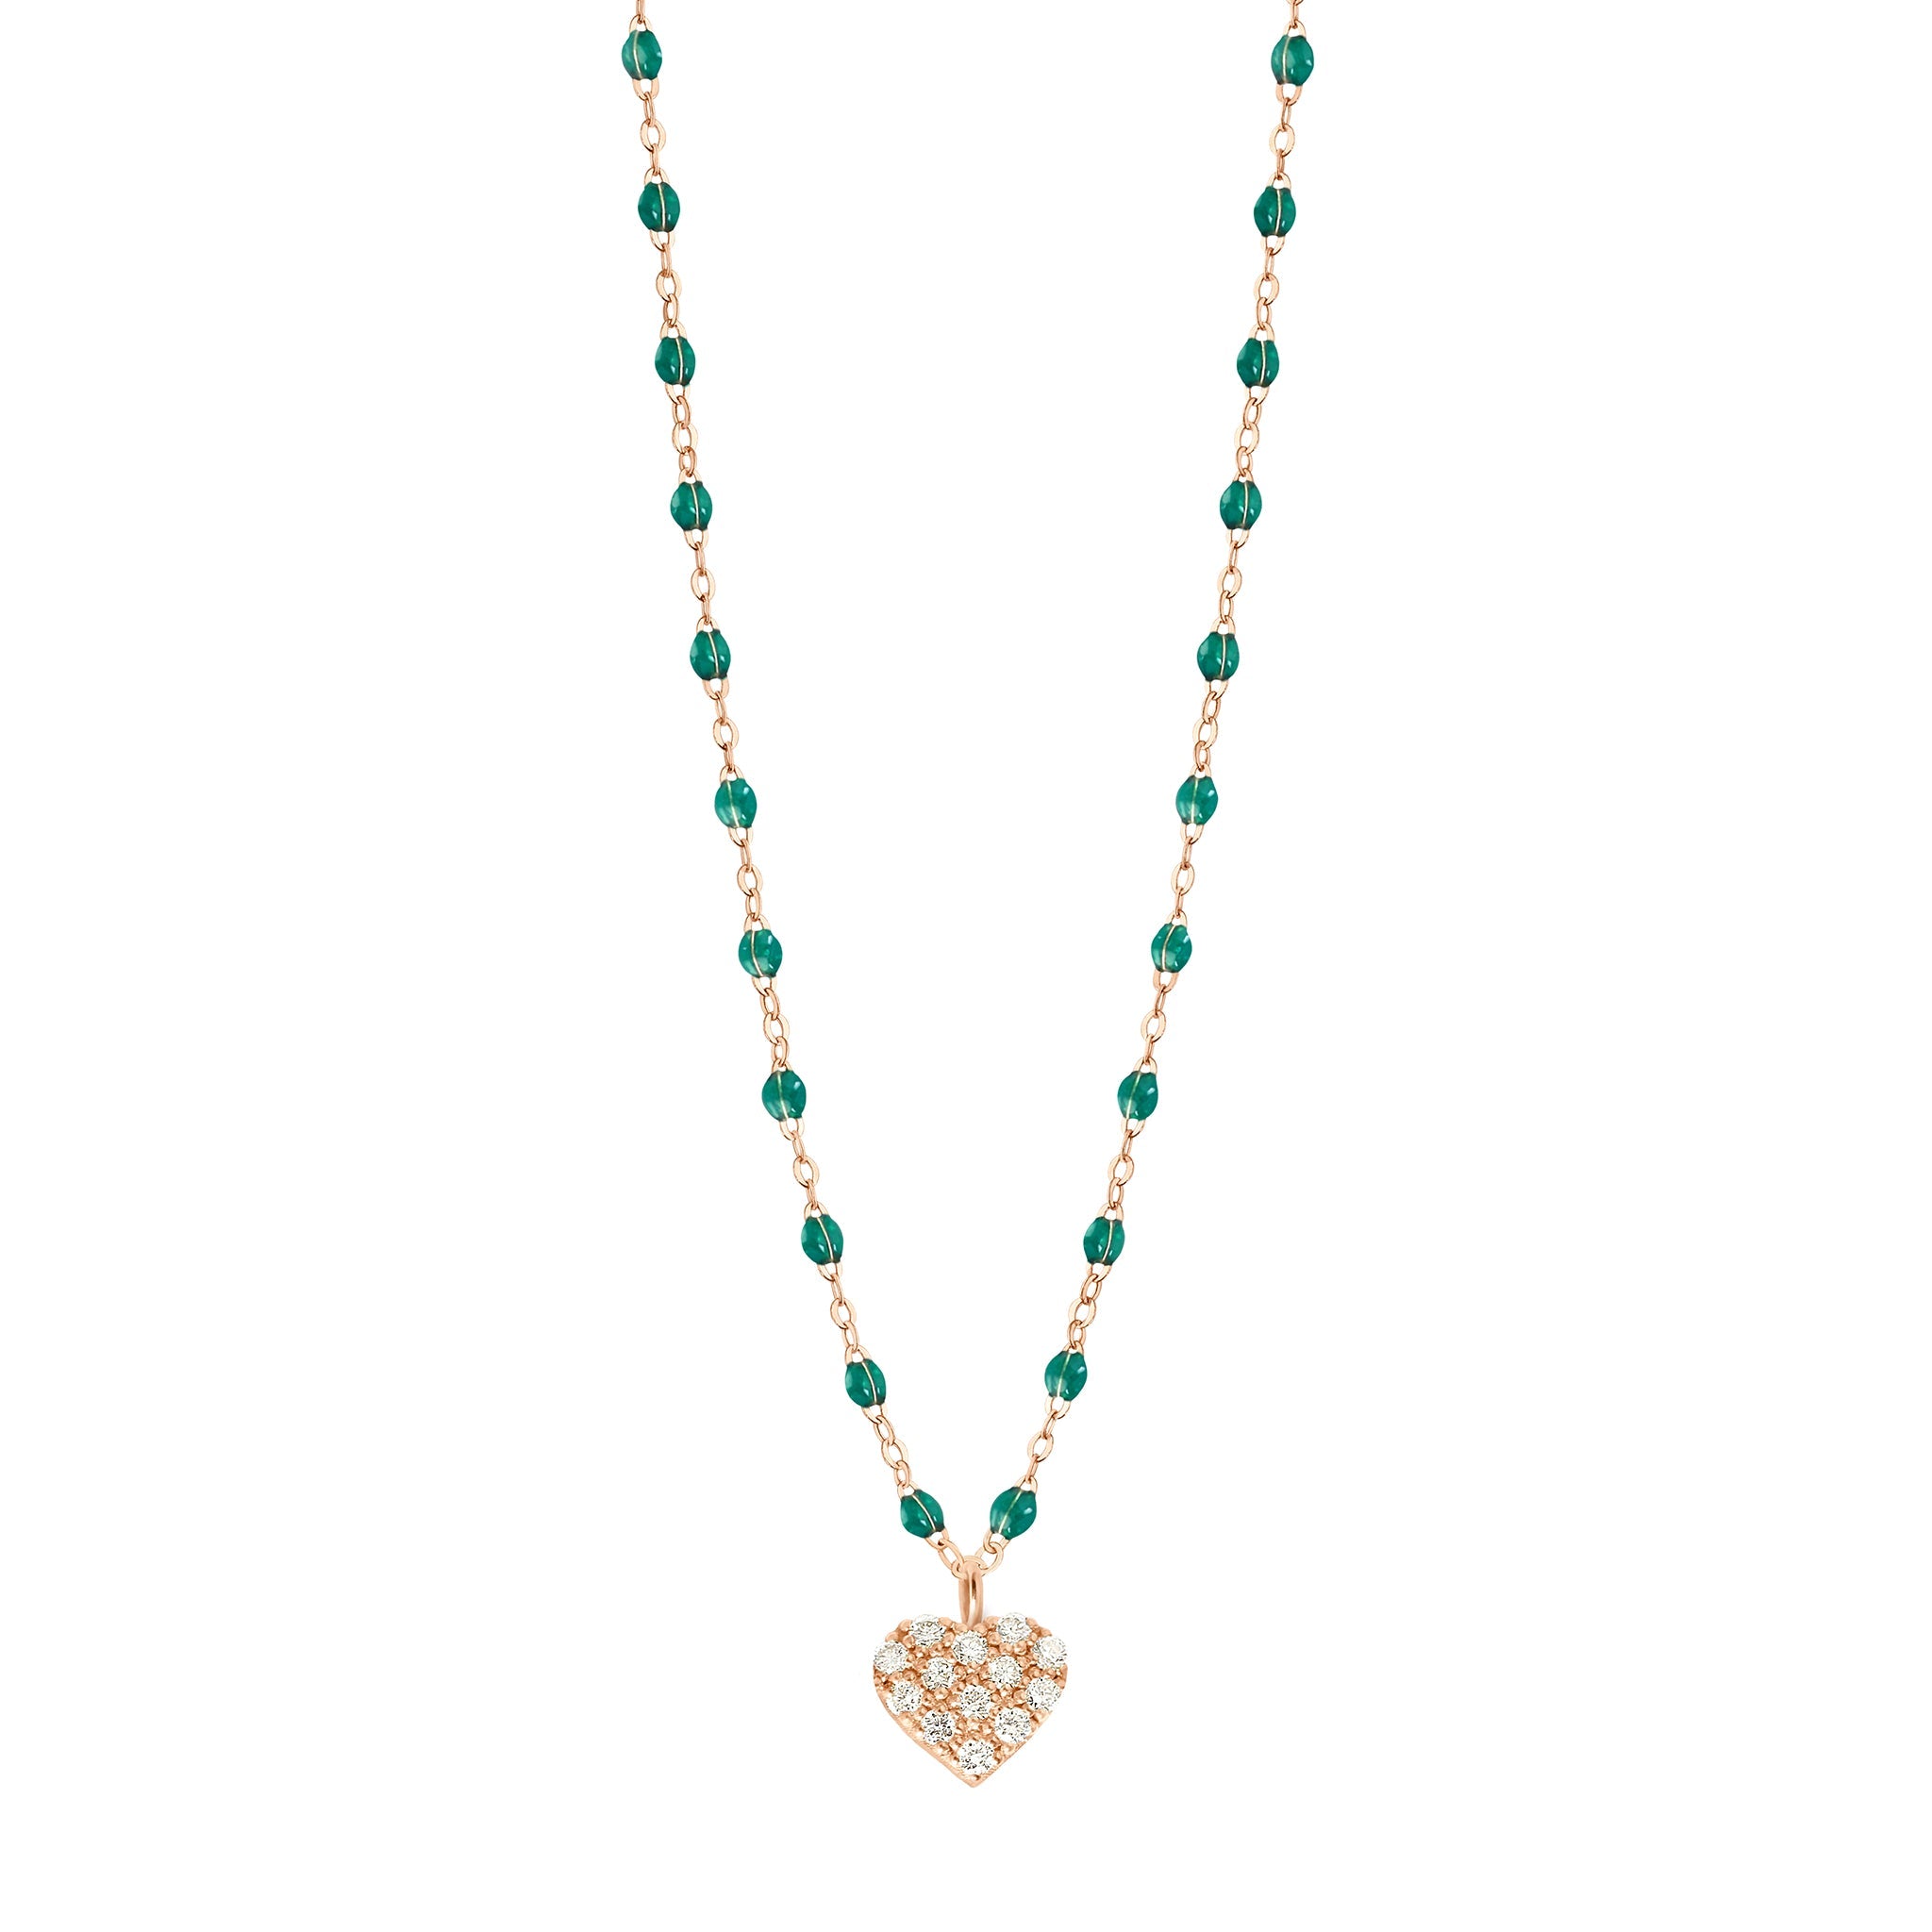 Gigi Clozeau - In Love Diamond Necklace, Emerald, Rose Gold, 16.5"